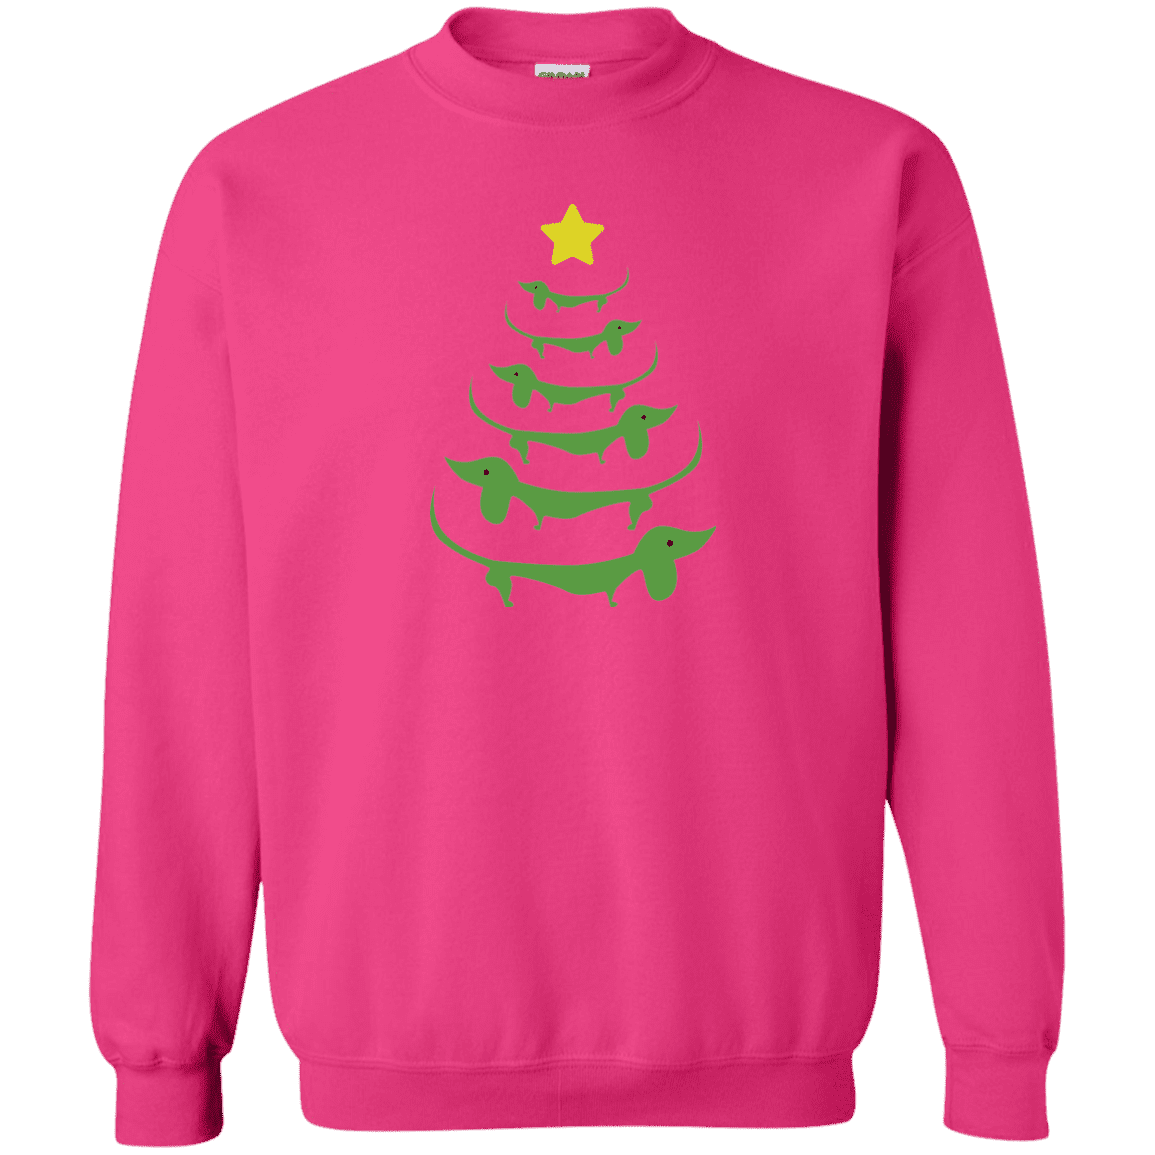 Dog Christmas Tree - Sweatshirt.